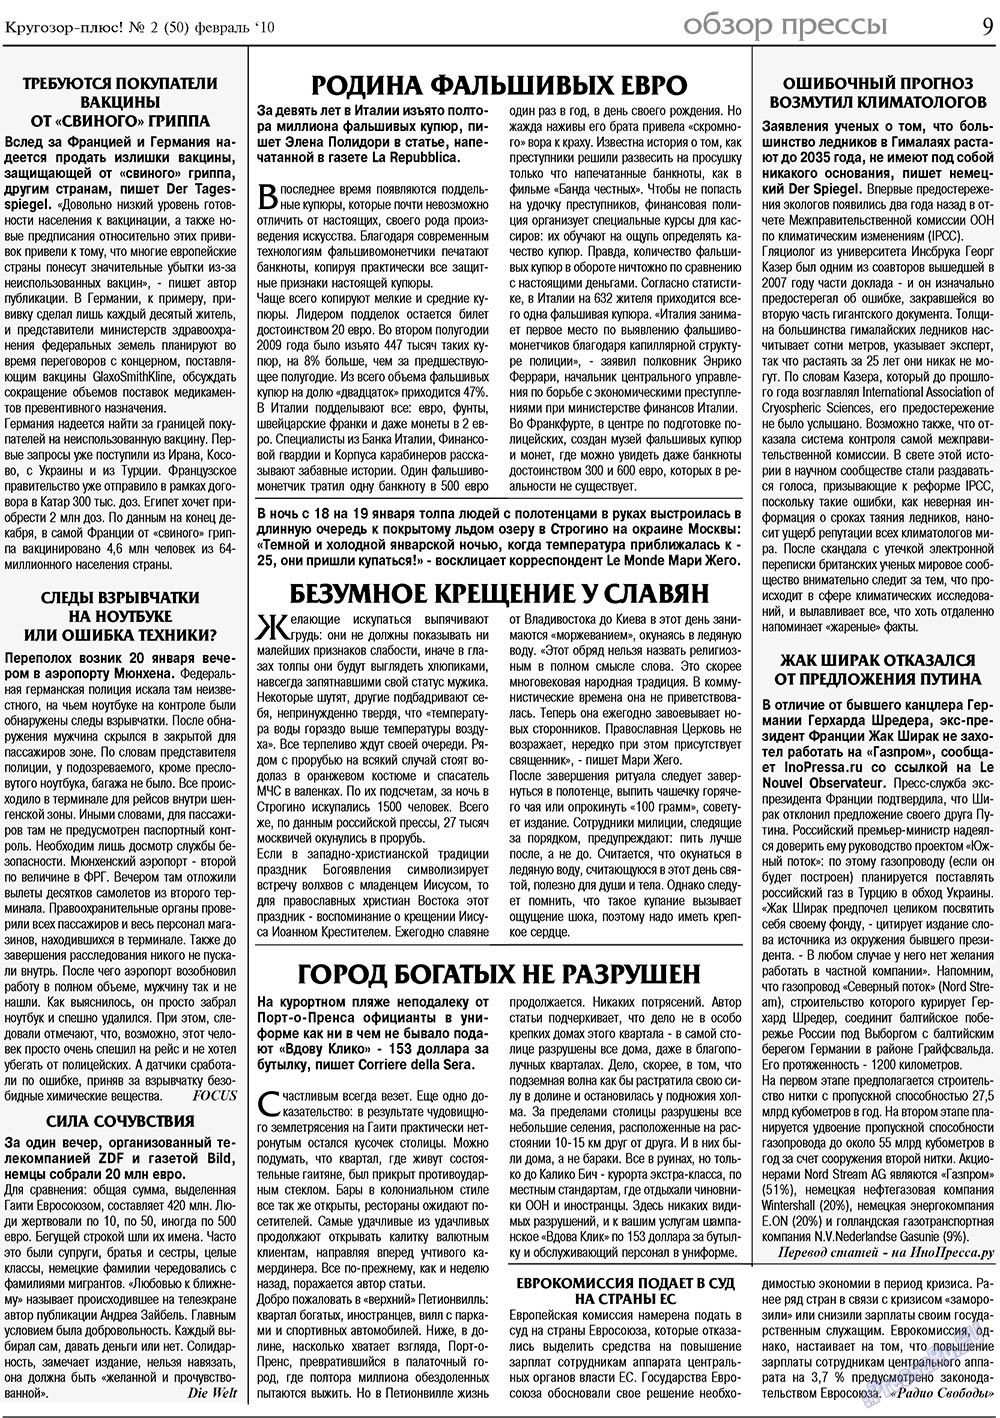 Кругозор плюс!, газета. 2010 №2 стр.9